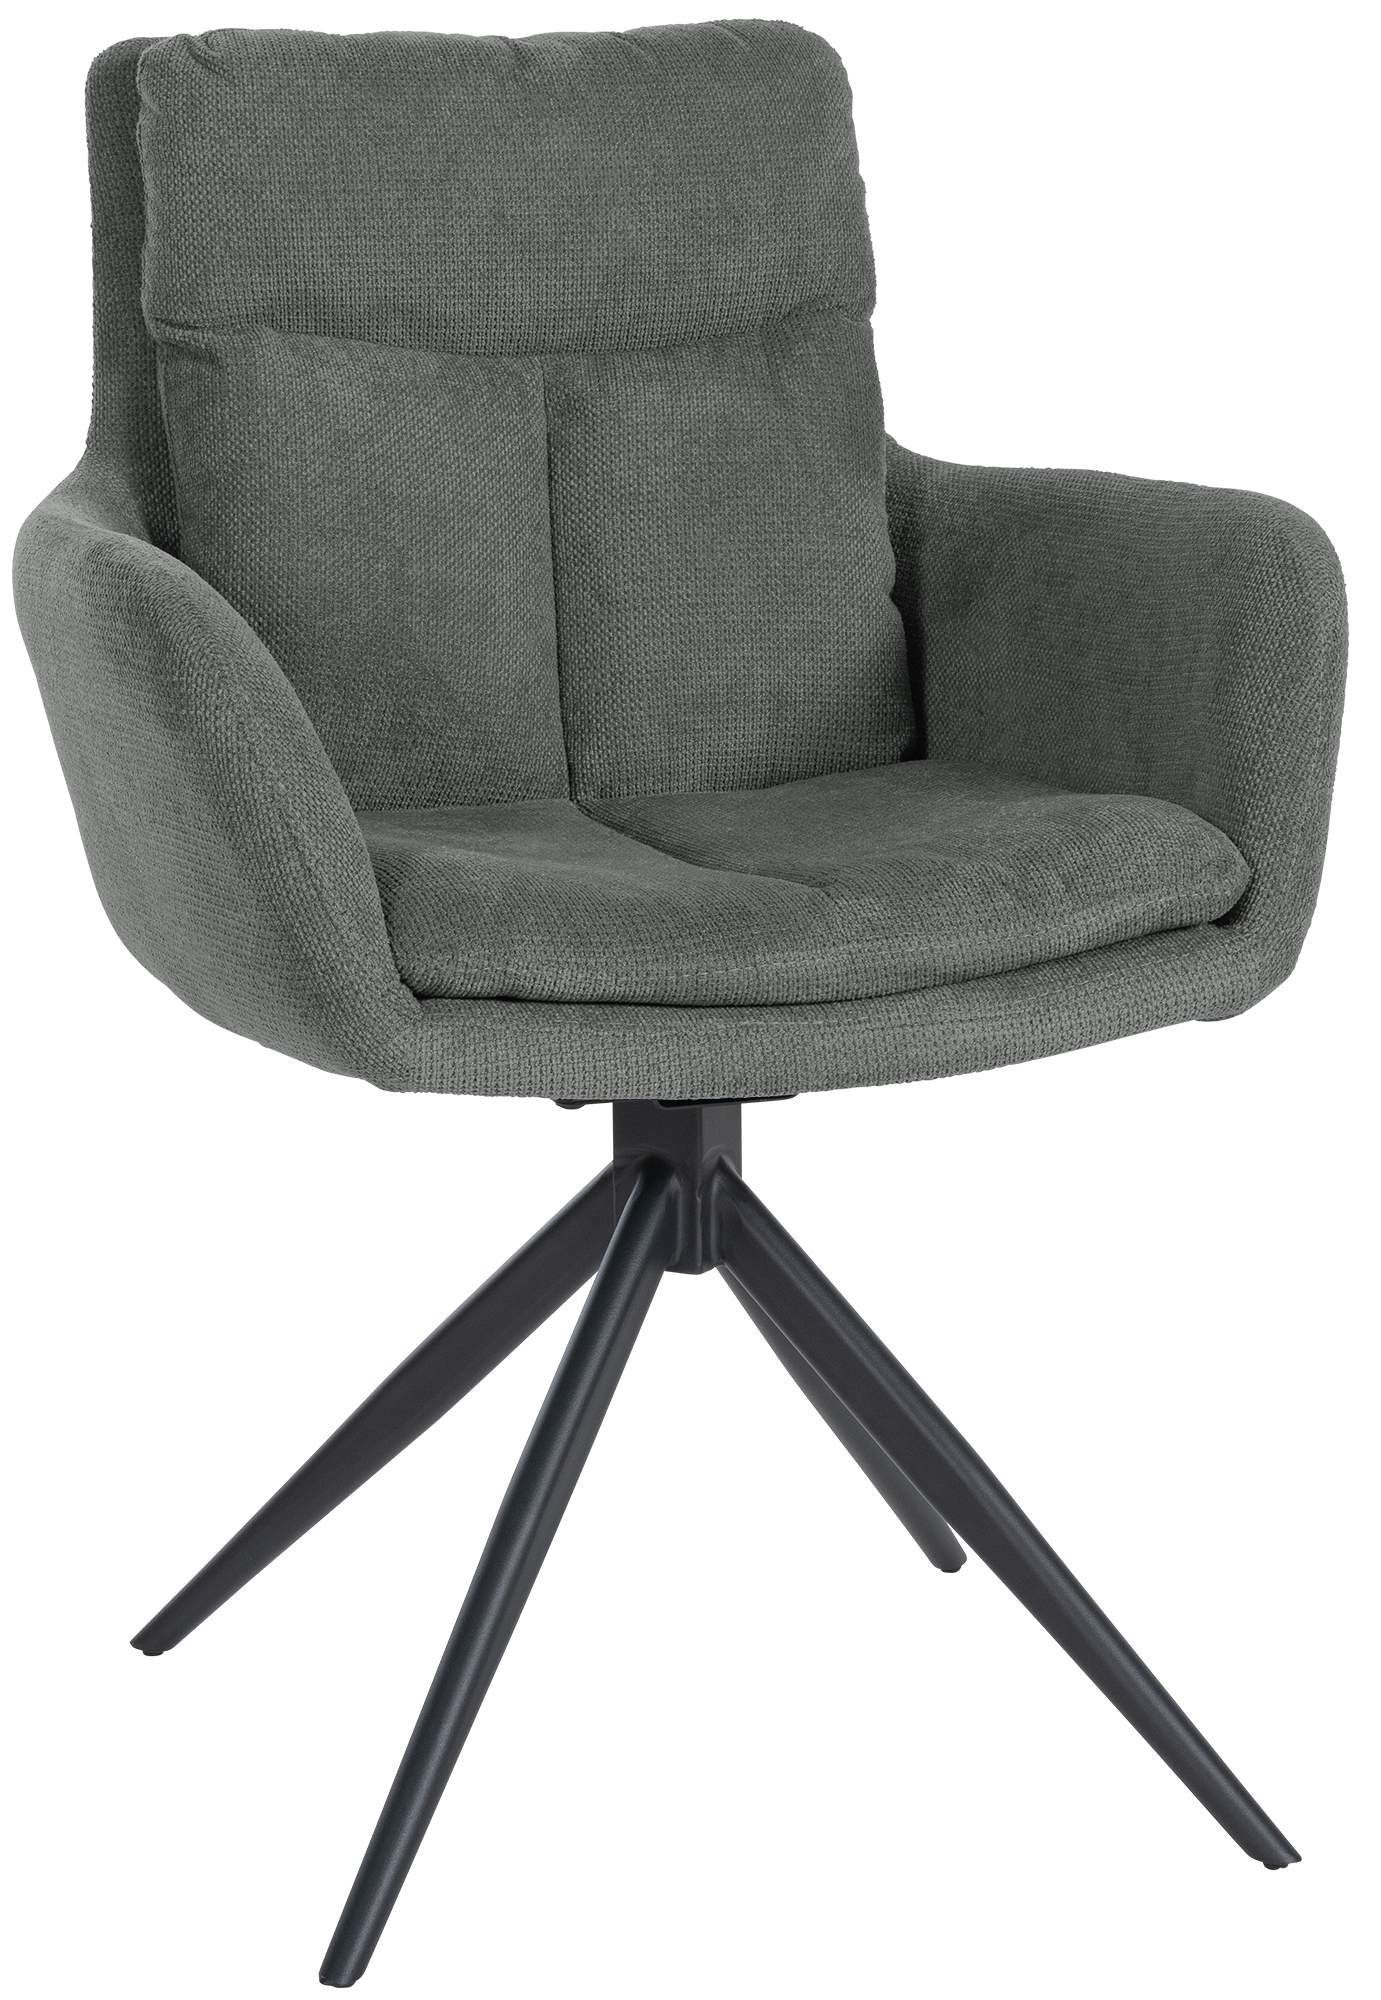 CLP Esszimmerstuhl Vilas, schwenkbarer Polster-Stuhl Mit Stoff-Bezug grau | Stühle